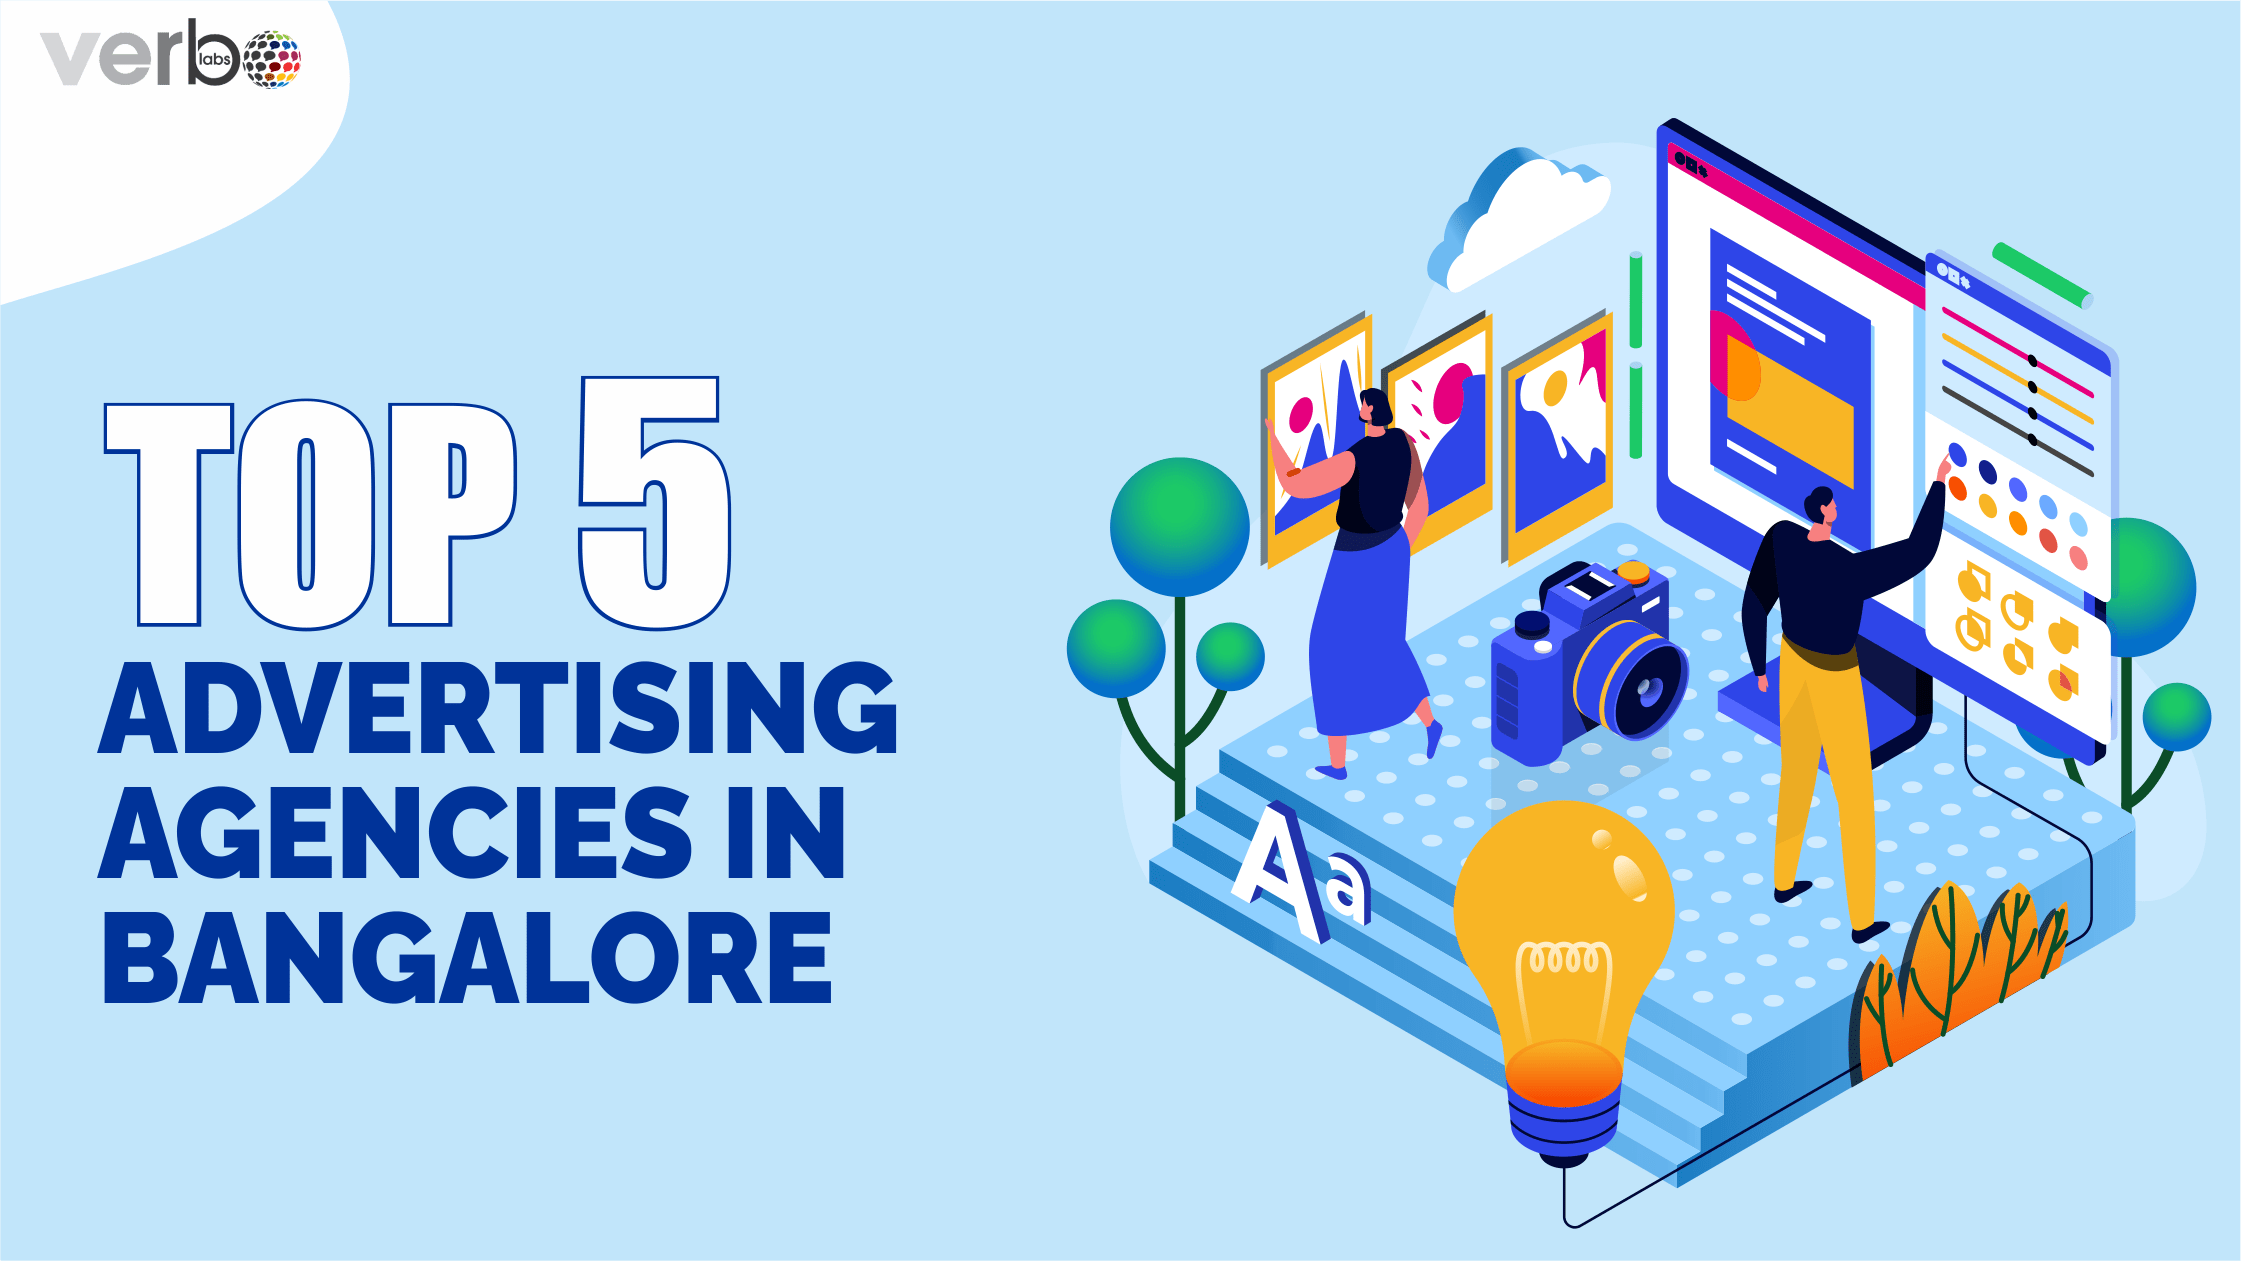 describing advertising agencies in Bangalore